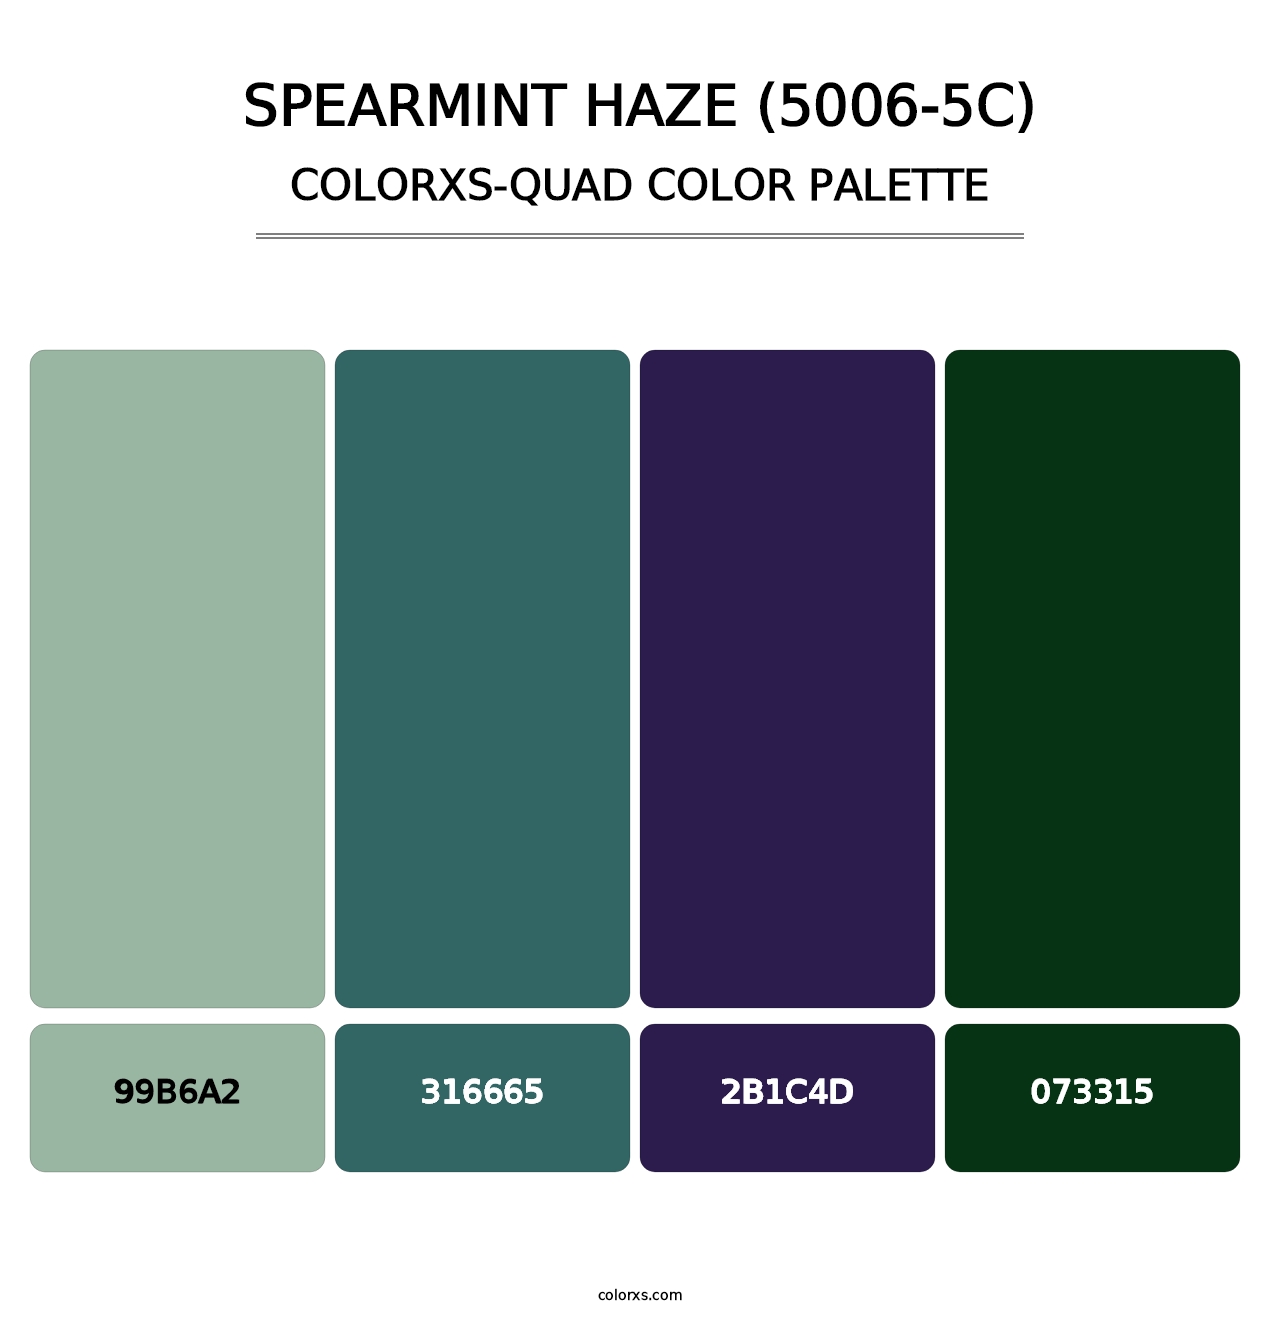 Spearmint Haze (5006-5C) - Colorxs Quad Palette